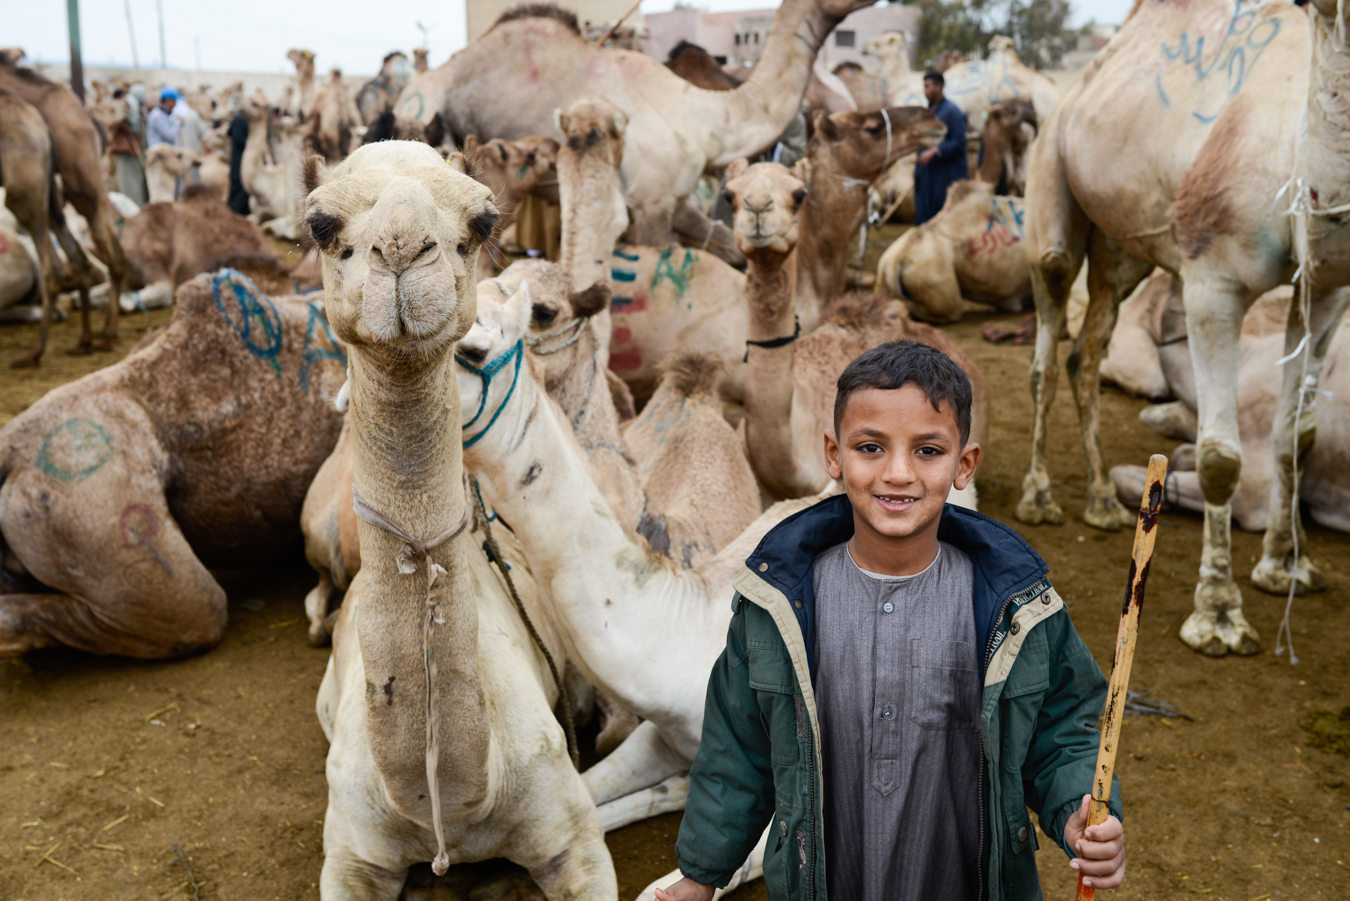 Egipt Jerzy Bednarski Photo Camel Trip Reporter